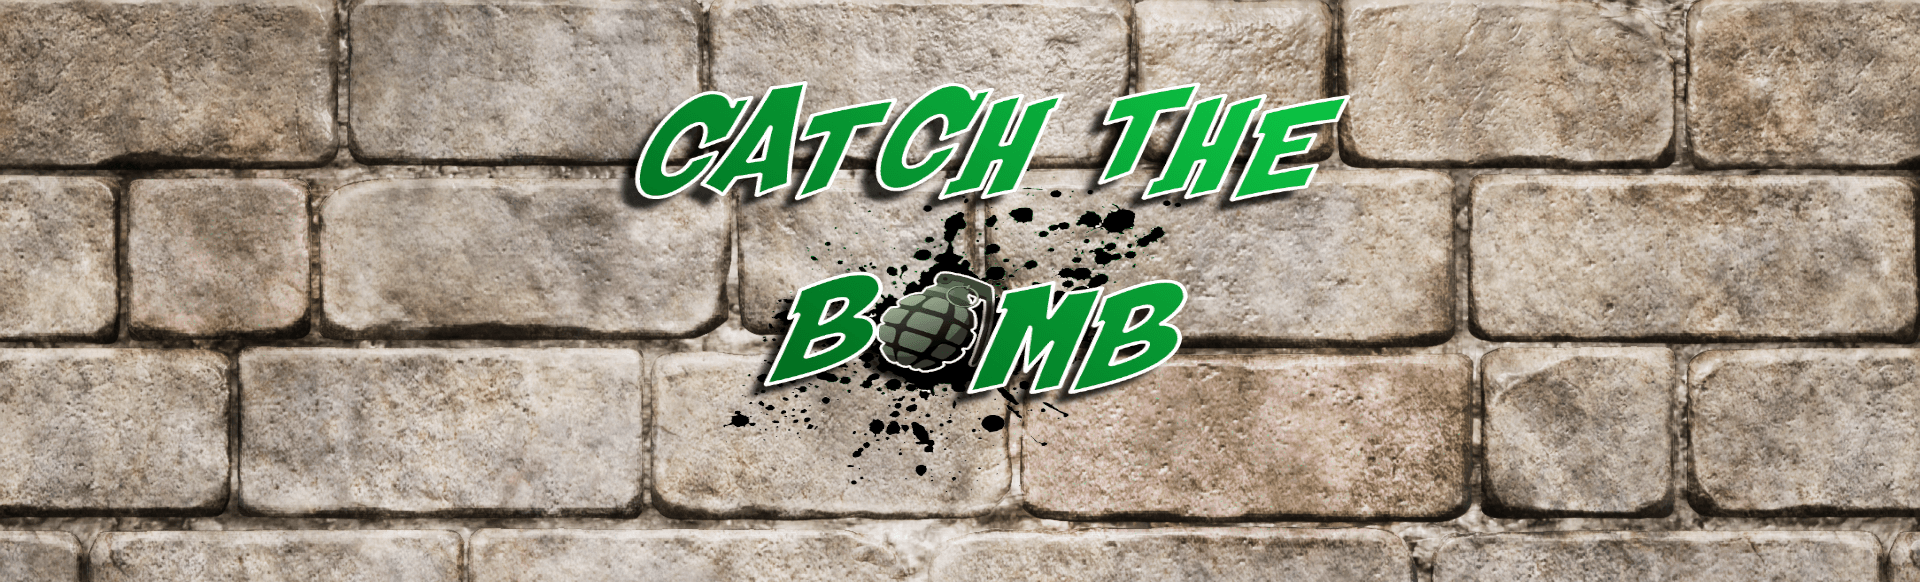 Catch The Bomb